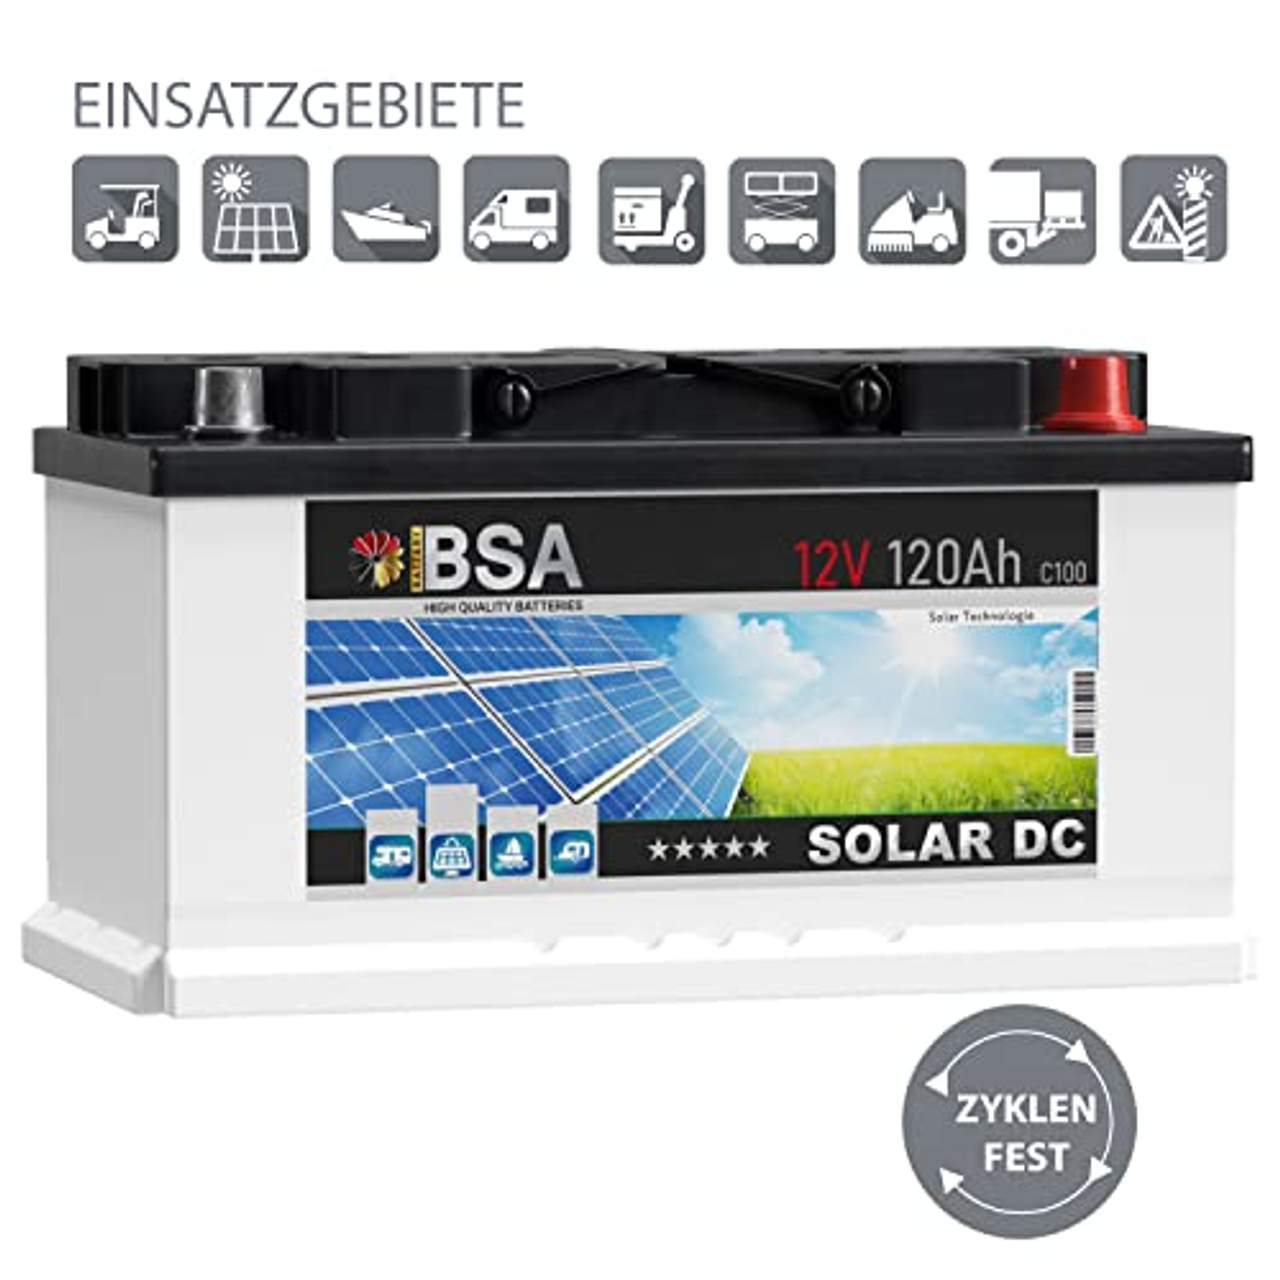 BSA Solar DC 12V 120Ah Batterie Solarbatterie Versorgungsbatterie Boot